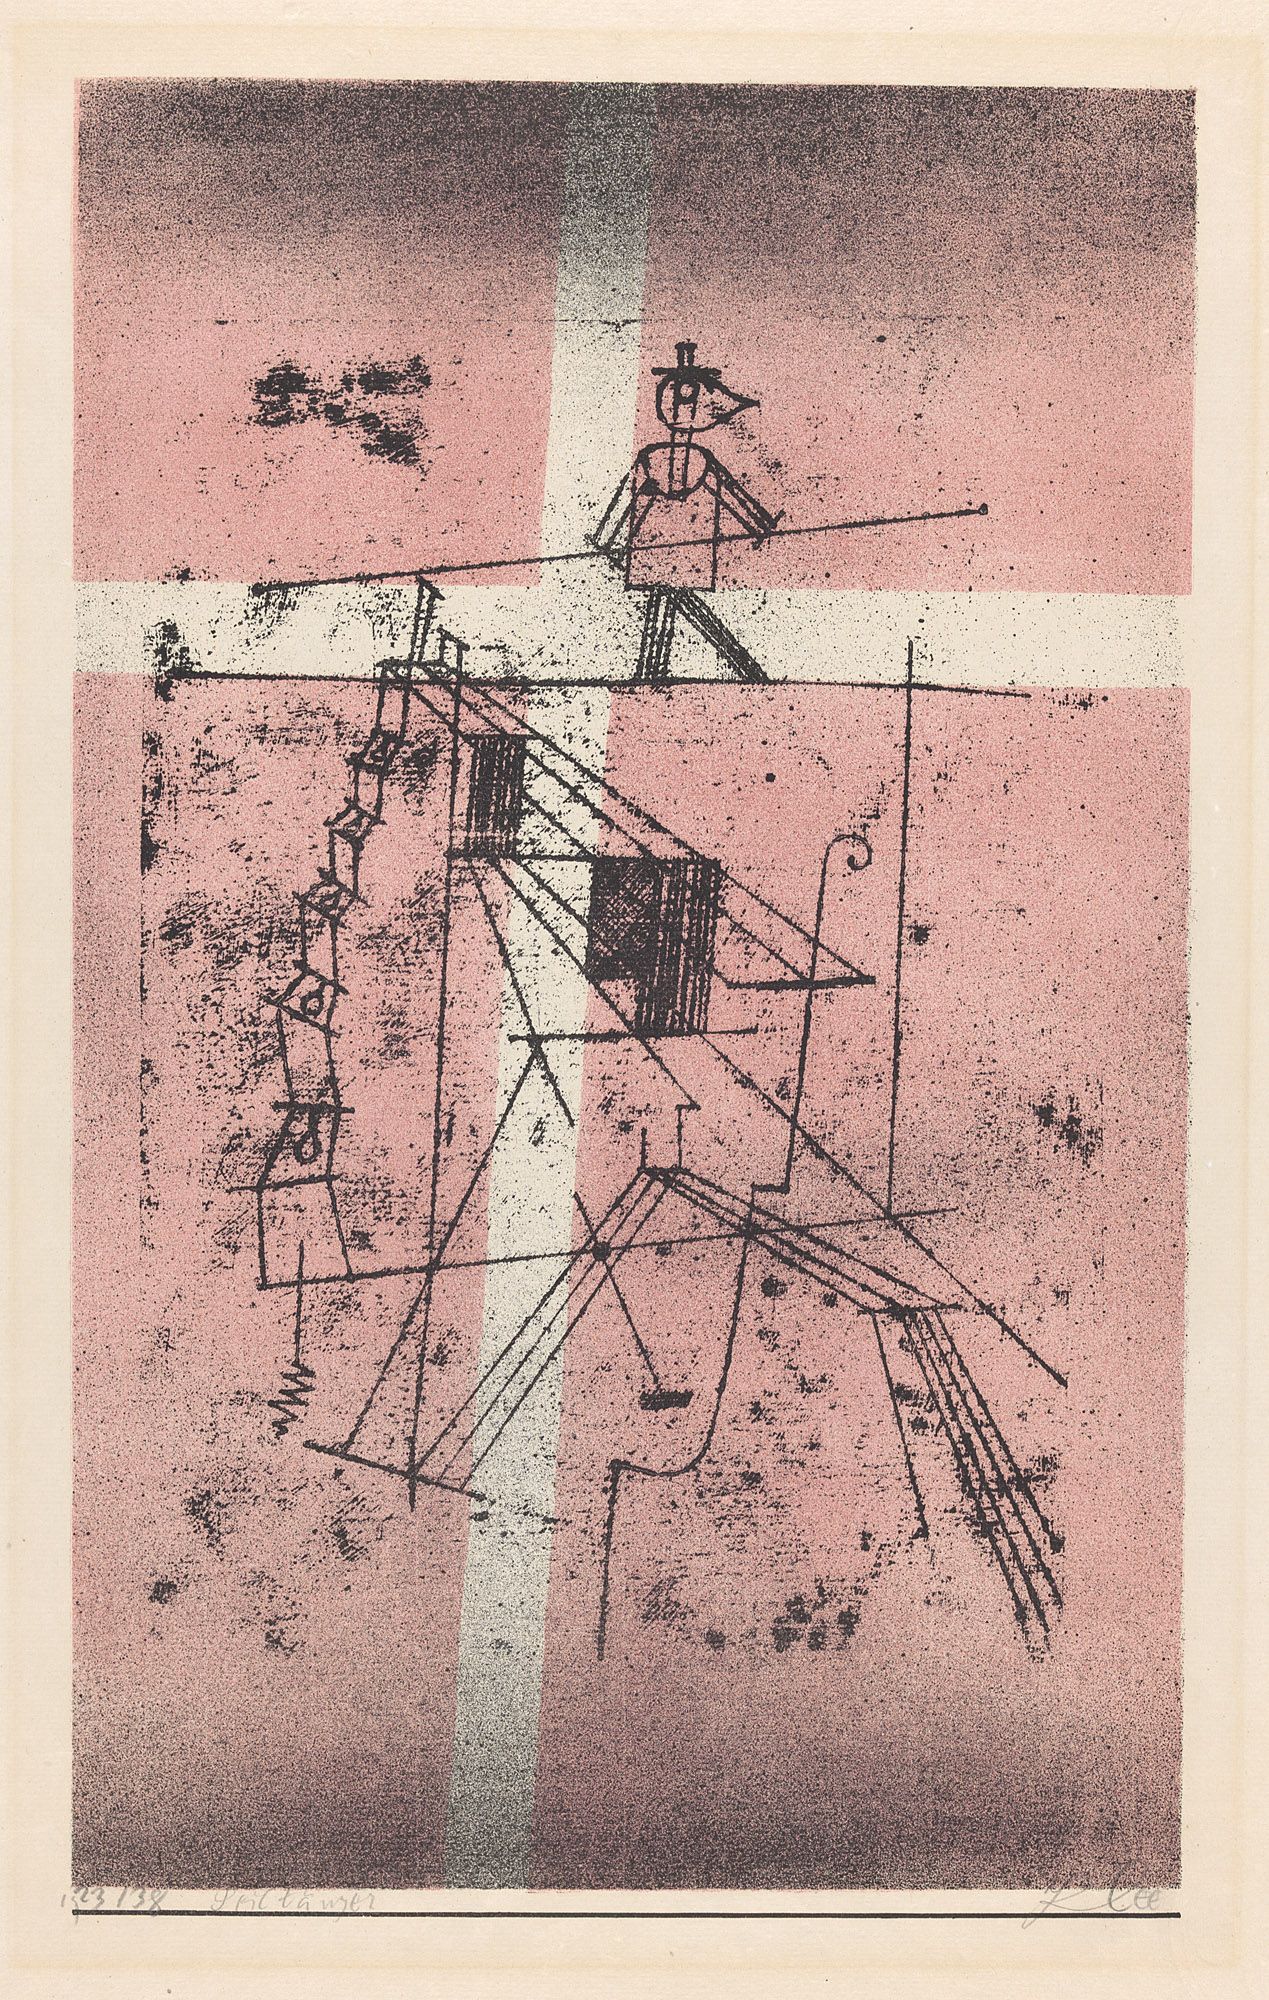 綱渡り師 by Paul Klee - 1923年 - 48,7 x 32,2 cm  